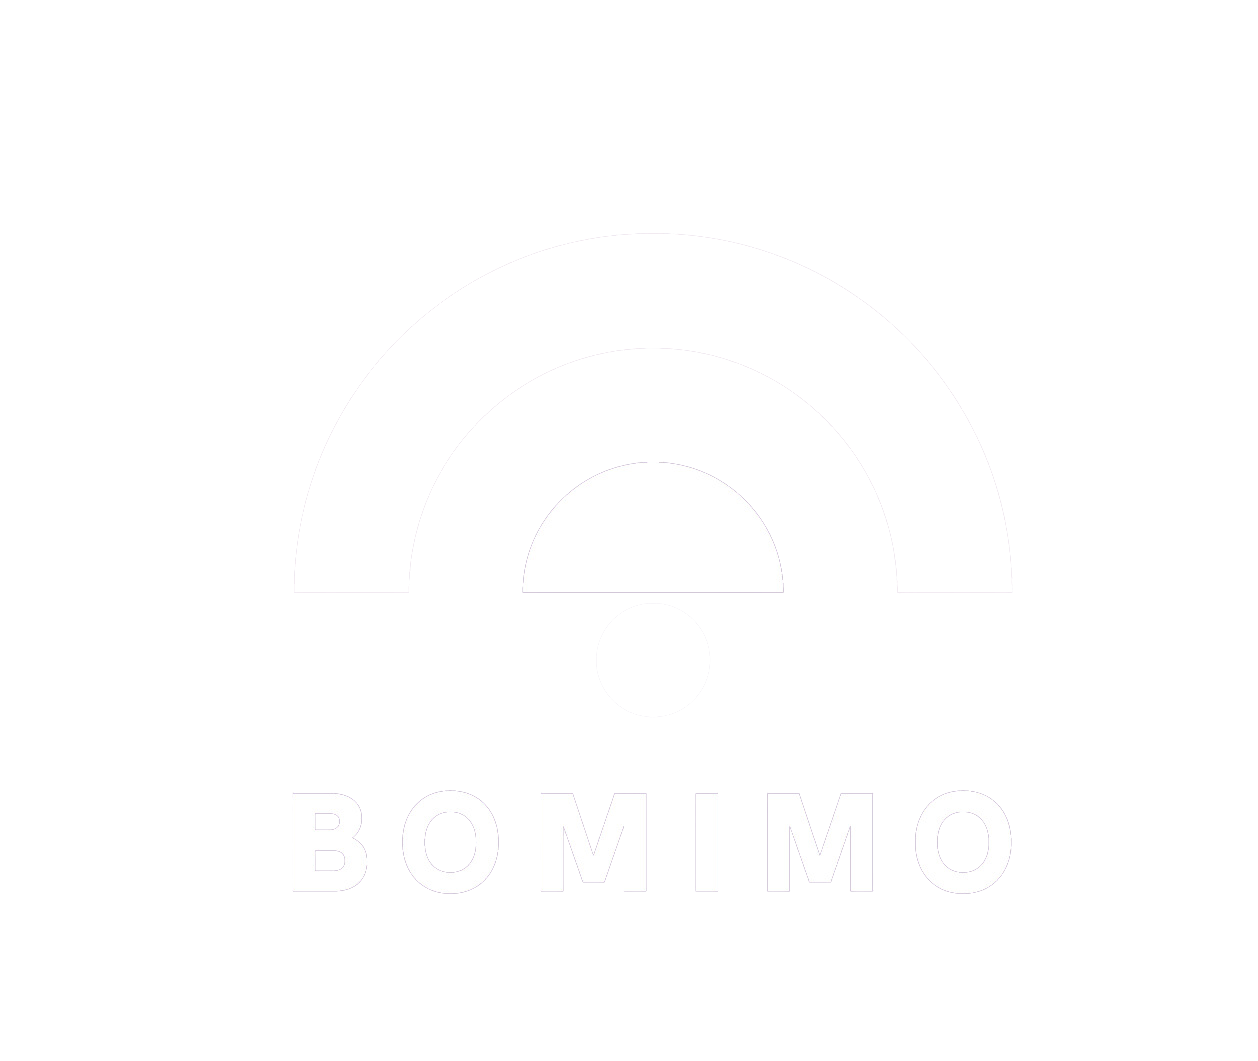 BOMIMO